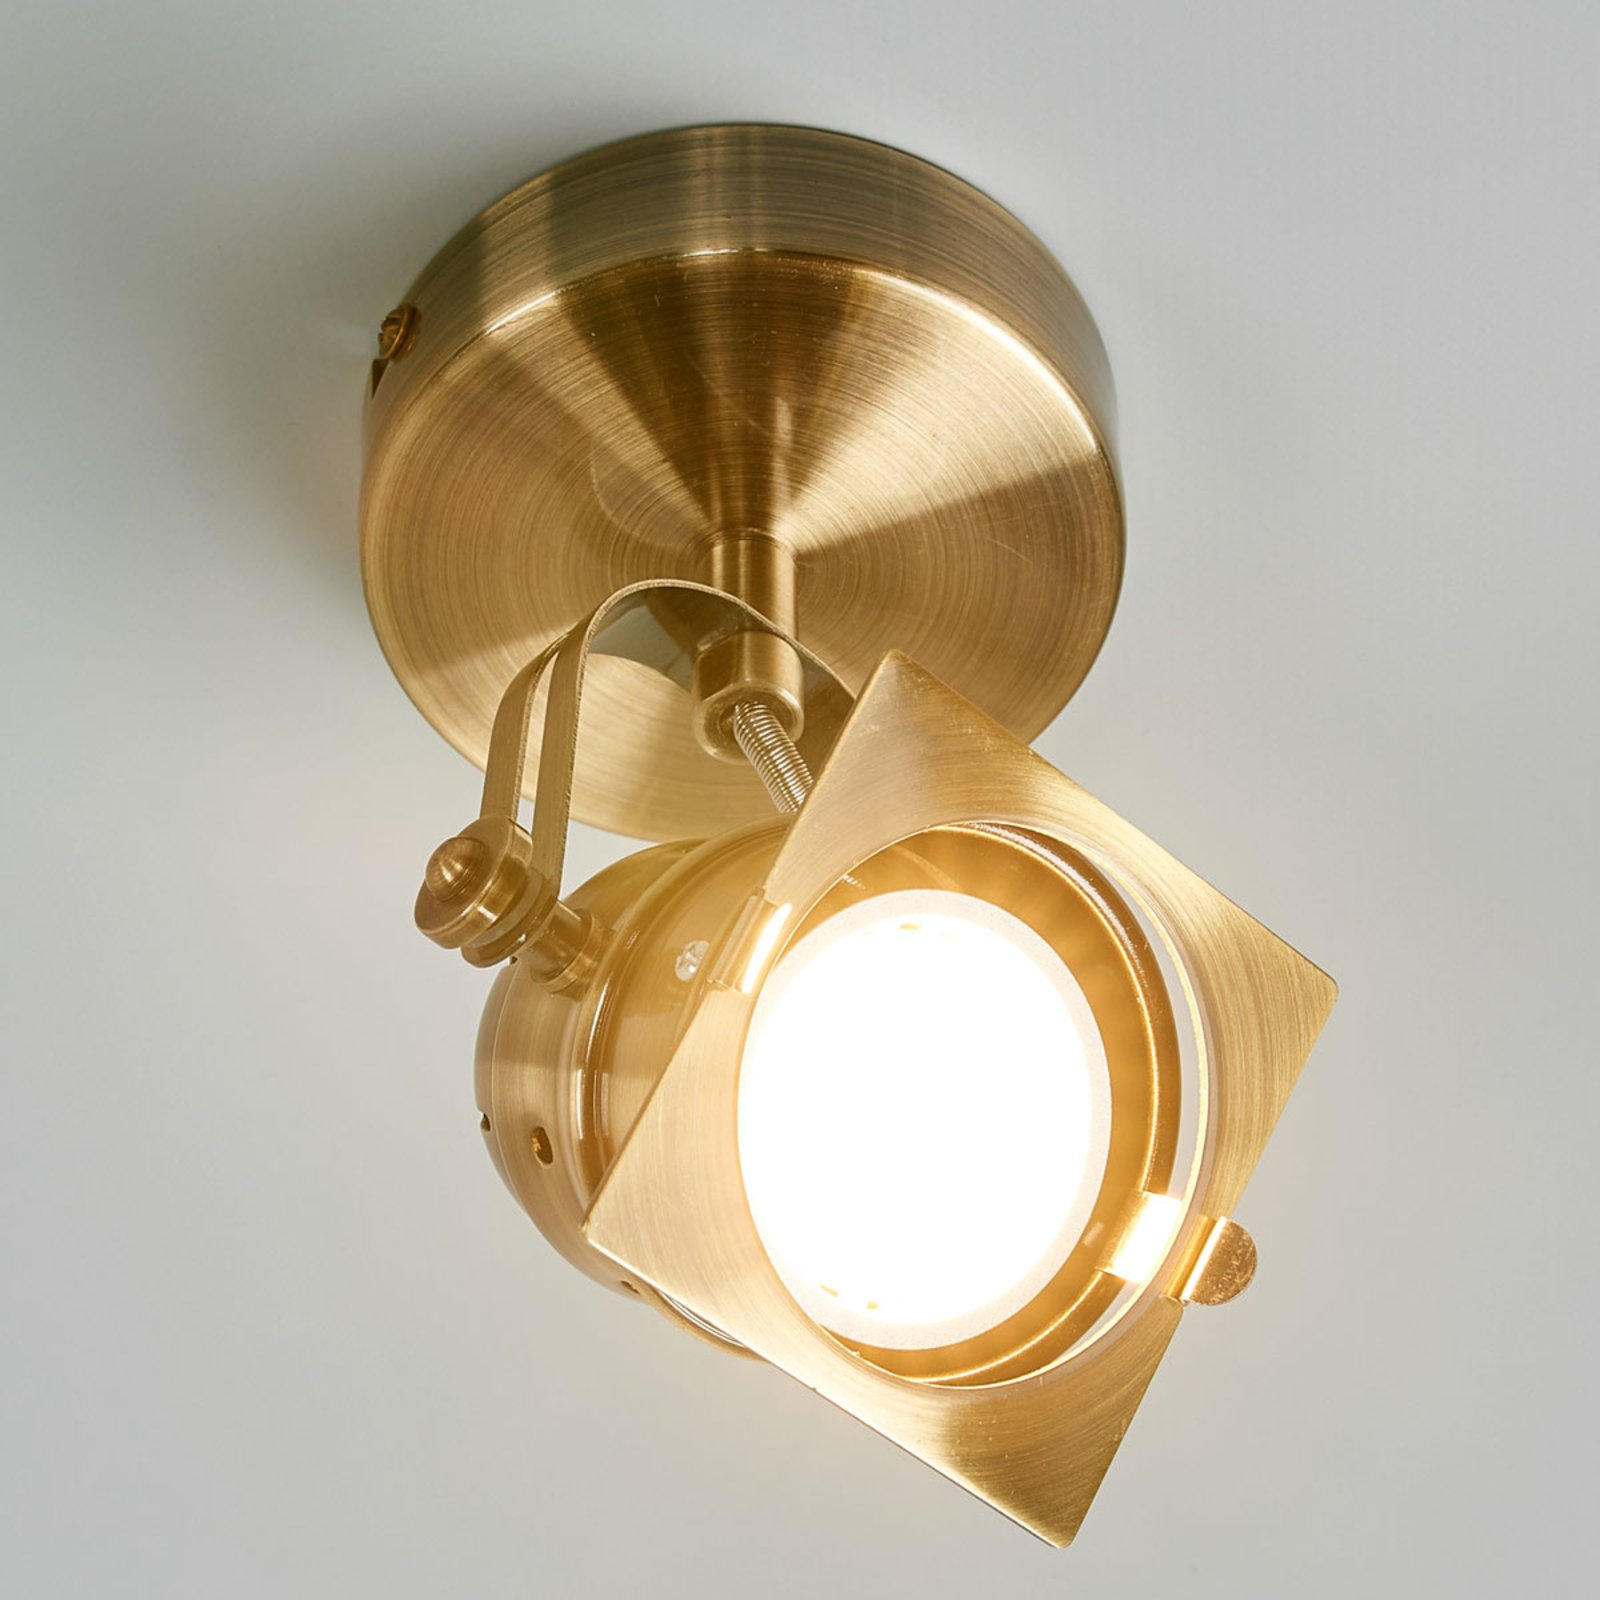 Janek spotlight, antique brass, GU10 socket